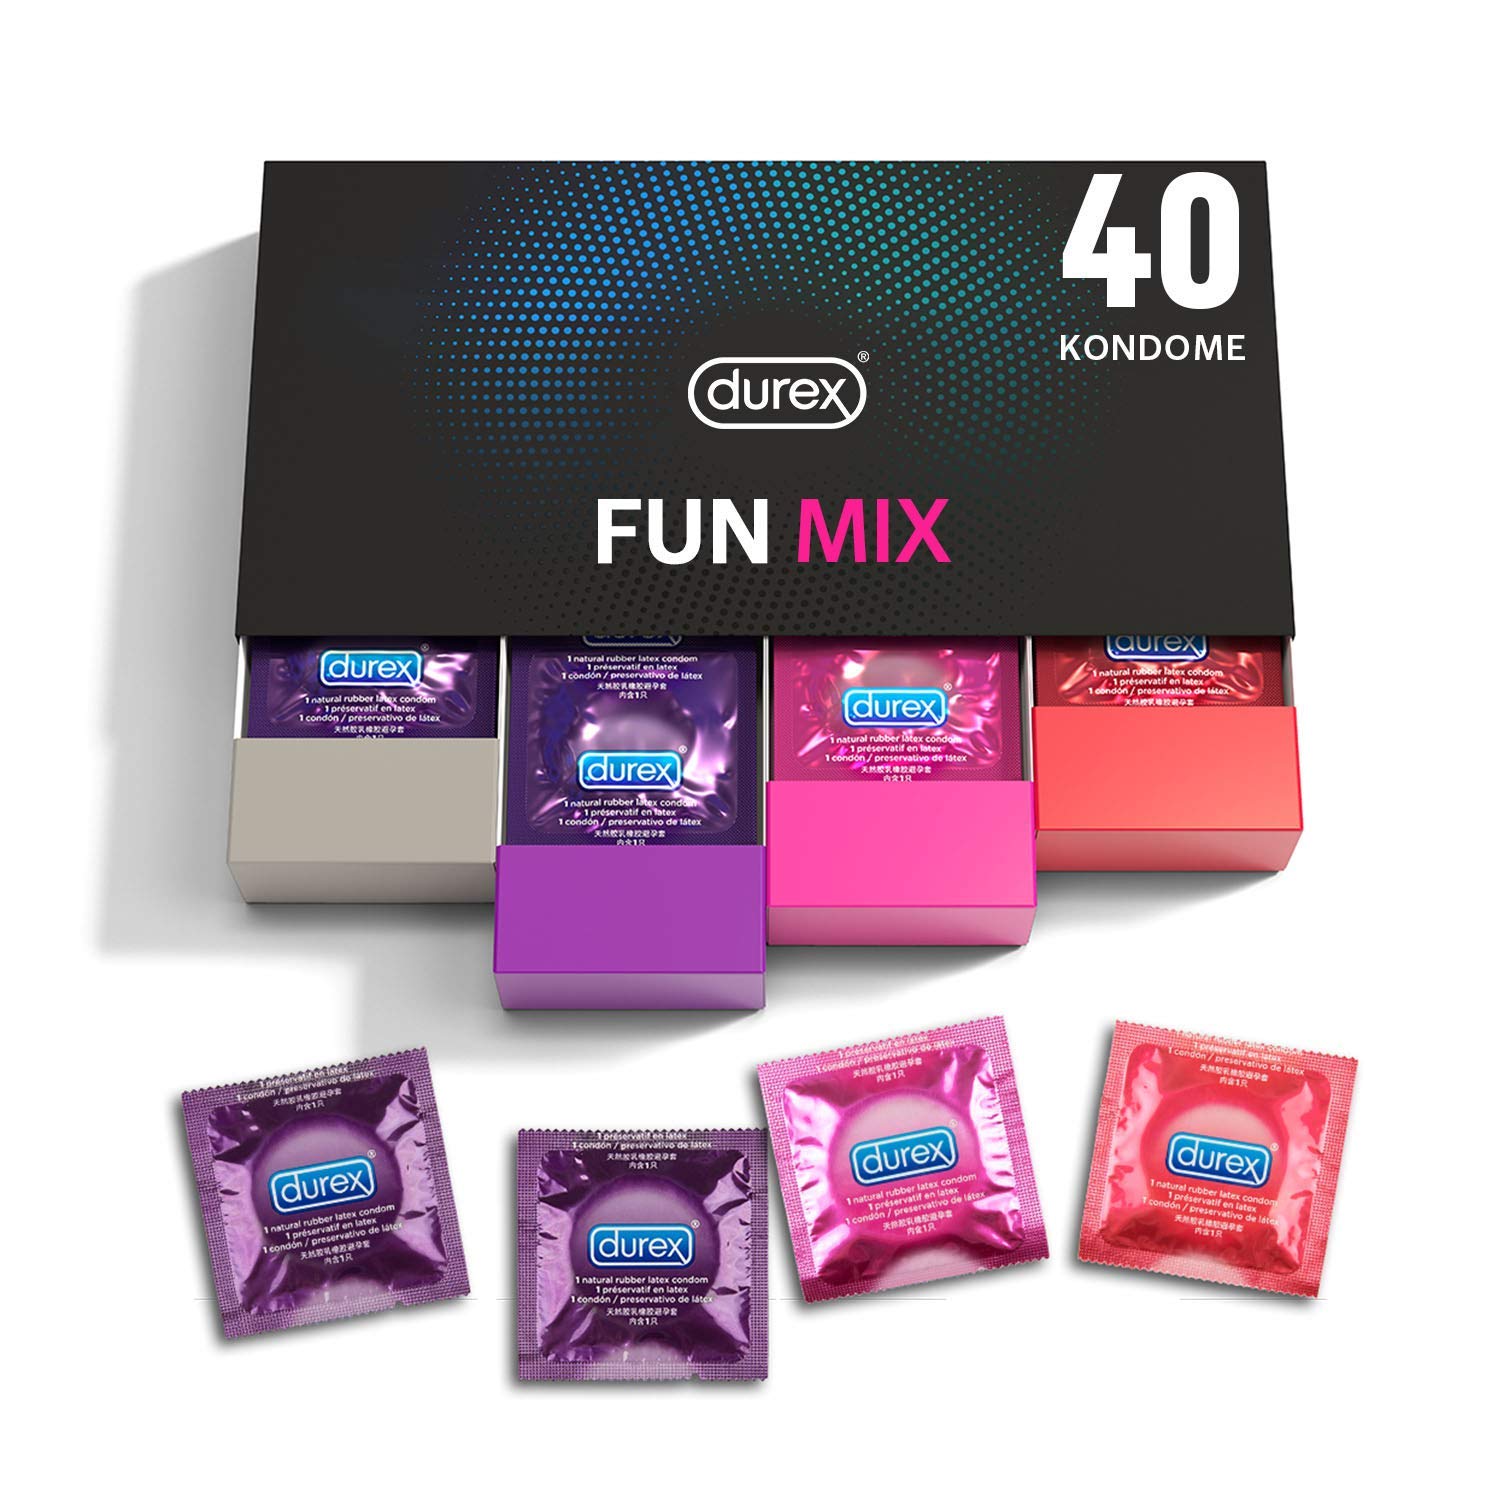 Durex Fun Explosion Kondome in stylischer Box – Aufregende Vielfalt, praktisch & diskret verpackt - Verhütung – Kondom Probierpaket – 40er Großpackung (1 x 40 Stück)